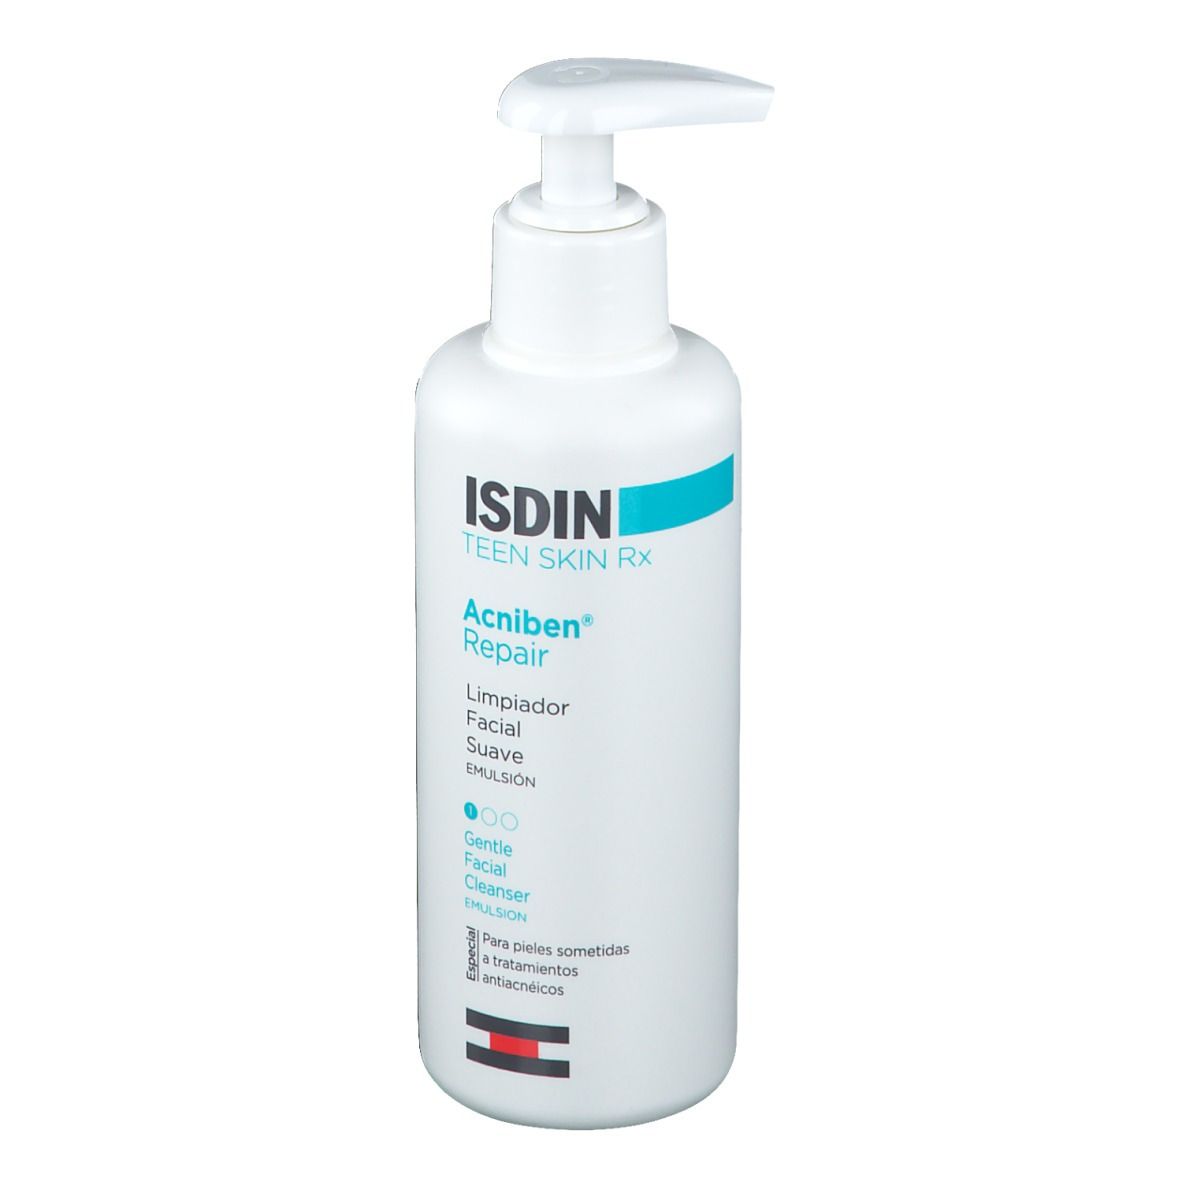 Image of ISDIN Teen Skin RX Acniben® Repair